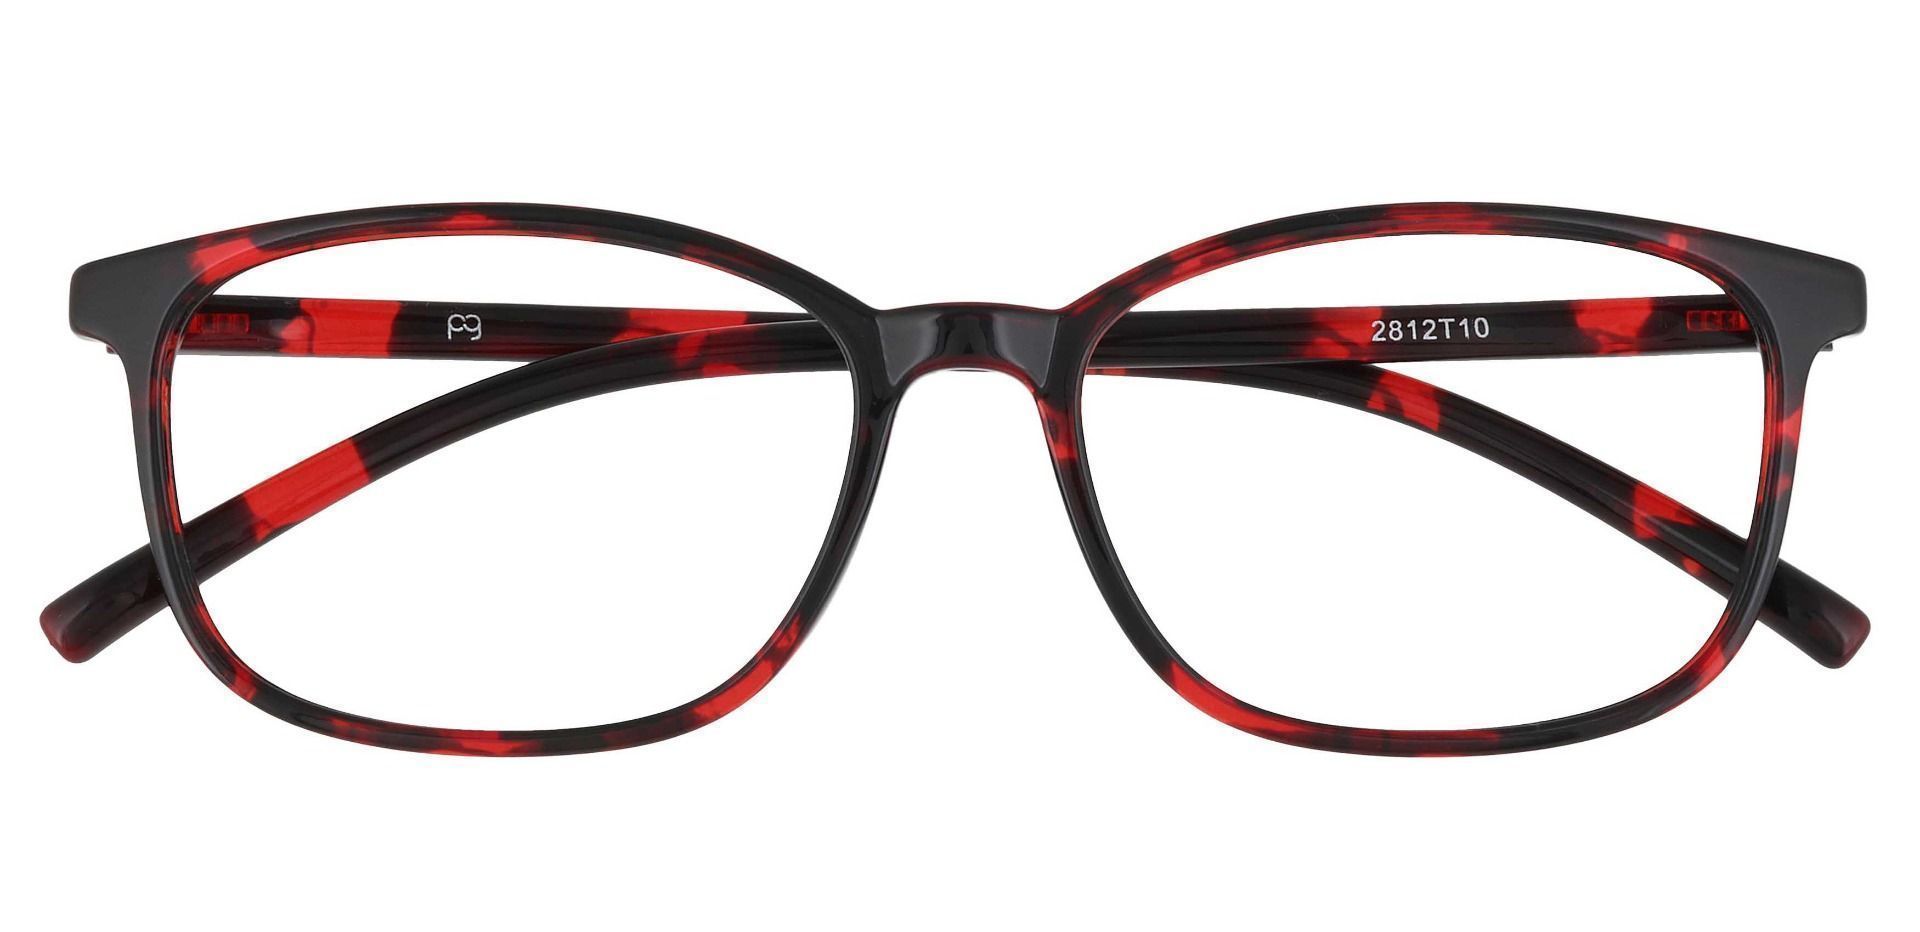 Onyx Square Prescription Glasses - Red